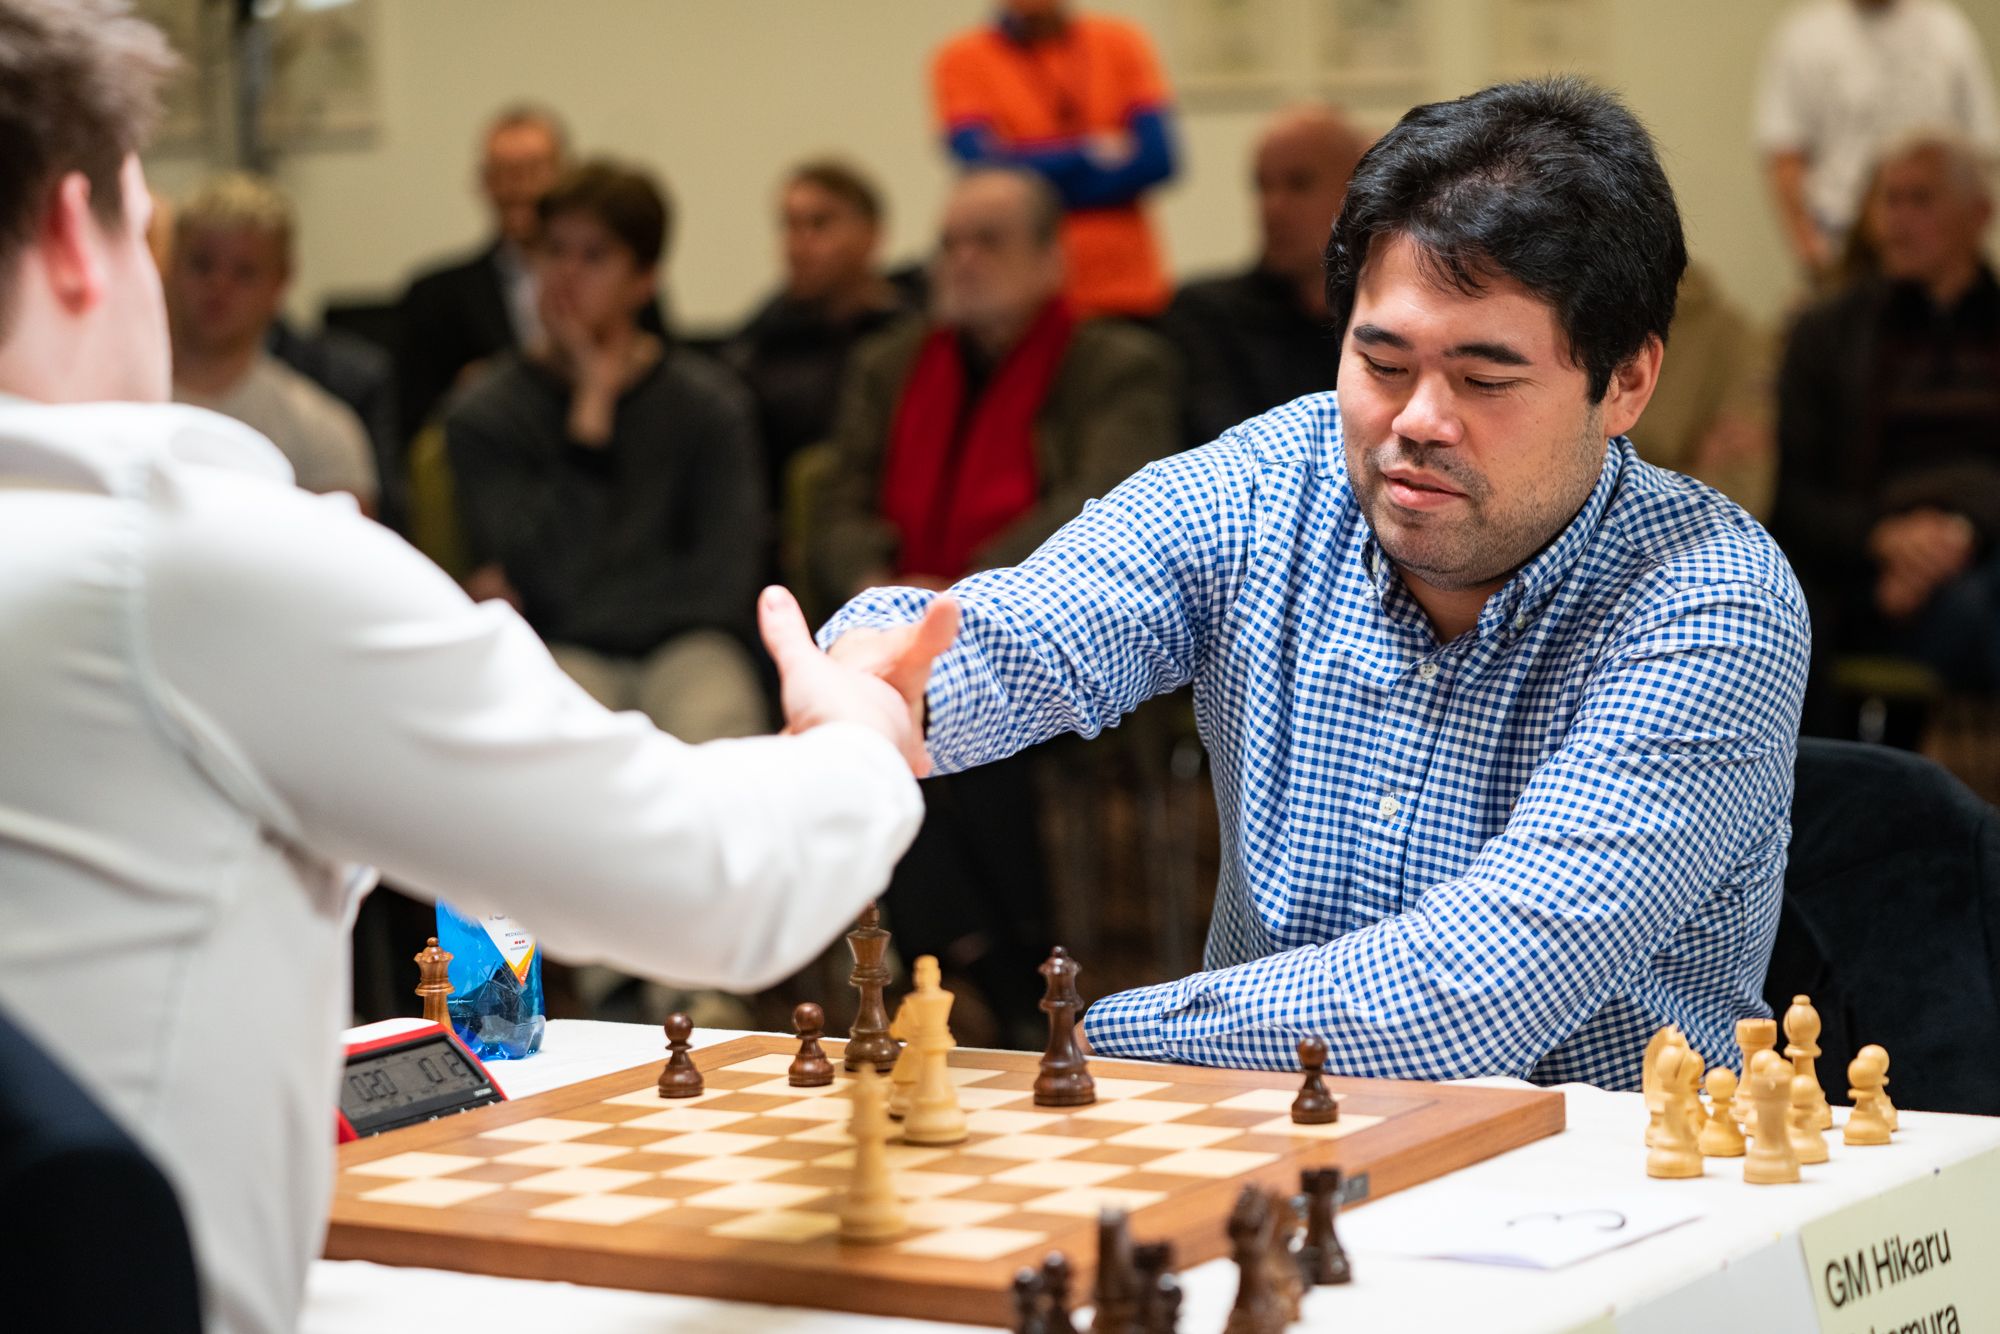 Has Magnus Carlsen checkmated himself? – DW – 12/27/2022